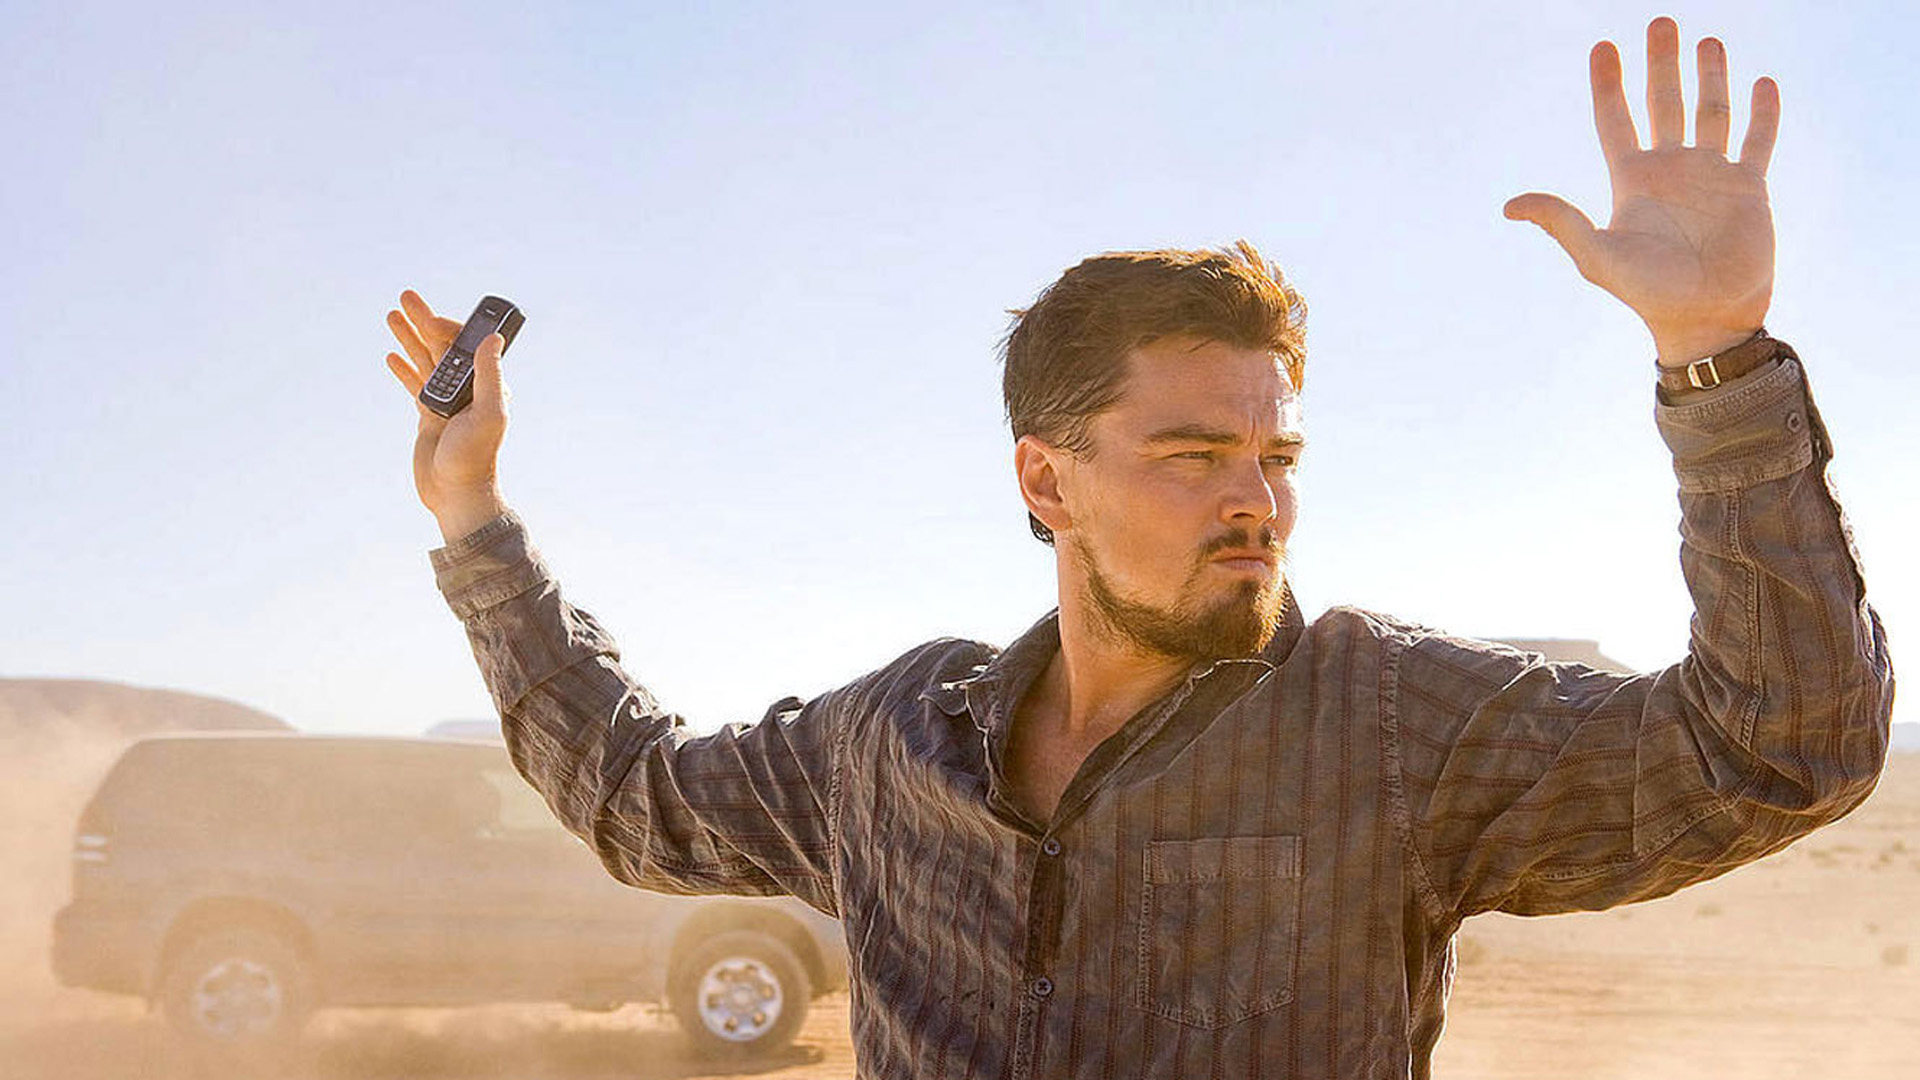 DER MANN, DER NIEMALS LEBTE: Leonardo diCaprio steht in einer staubigen, sonnendurchfluteten Wüstenlandschaft. Er ergibt sich und hält beide Hände in die Höhe.